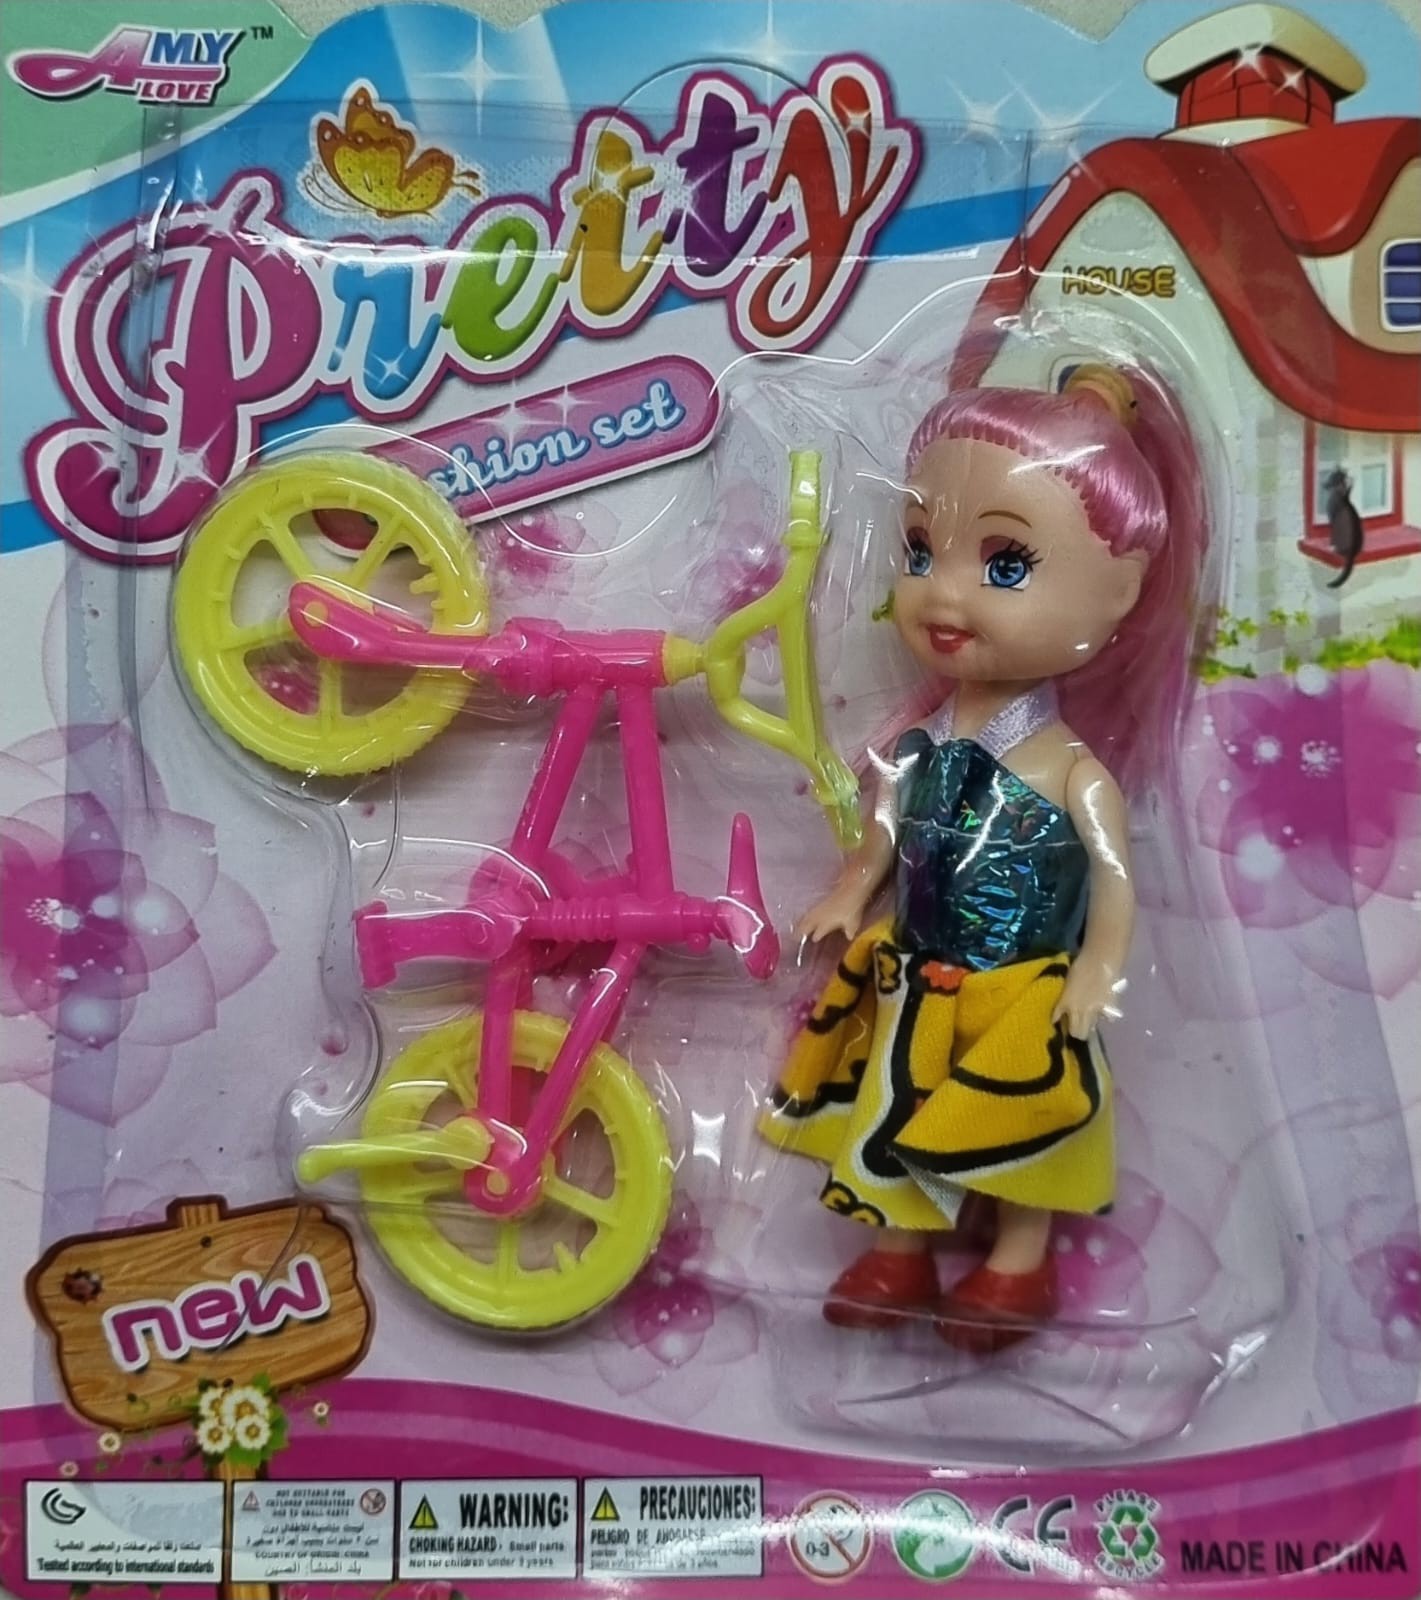 Boneca com bicicleta - venda de brinquedos para todo o Brasil -  Distribuidora de Brinquedos - Brinquedos Baratos - Brinquedos no Atacado -  Atacadista de Brinquedos - Lembrancinhas e Bindes